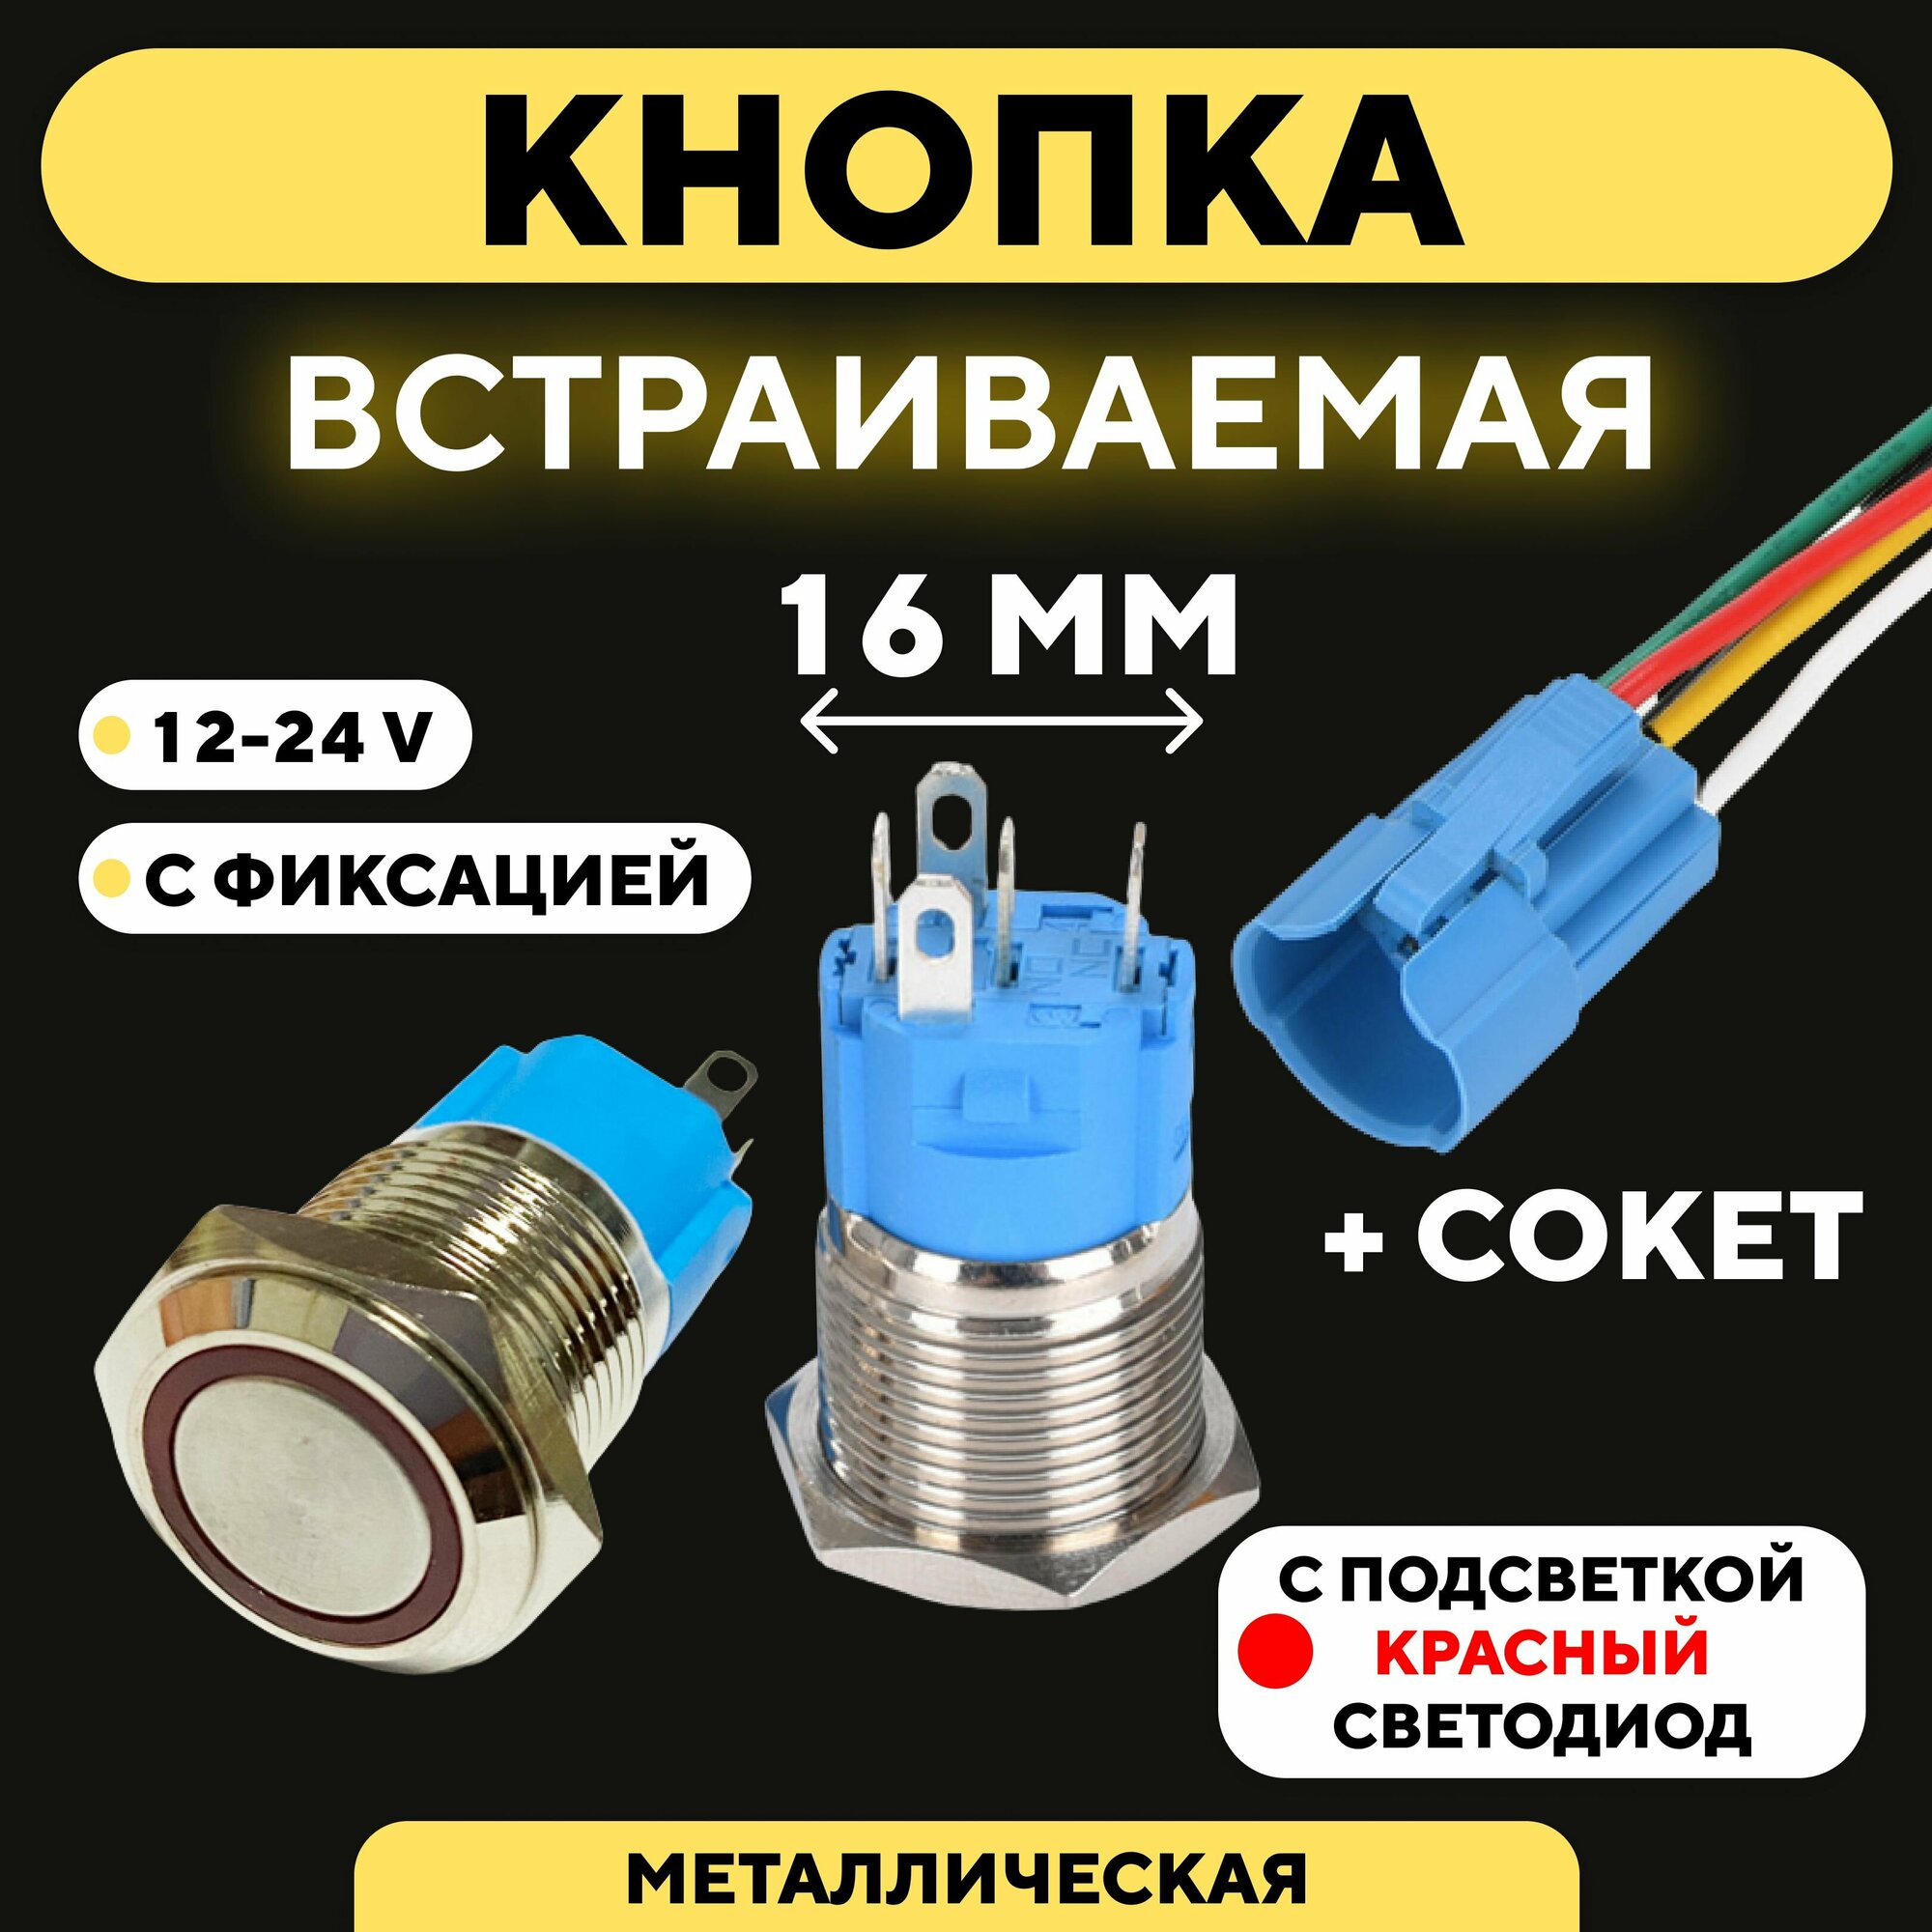 Кнопка для монтажа на корпус металлическая с индикатором (12-24 В 16 мм) / С фиксацией / Круг / Красный